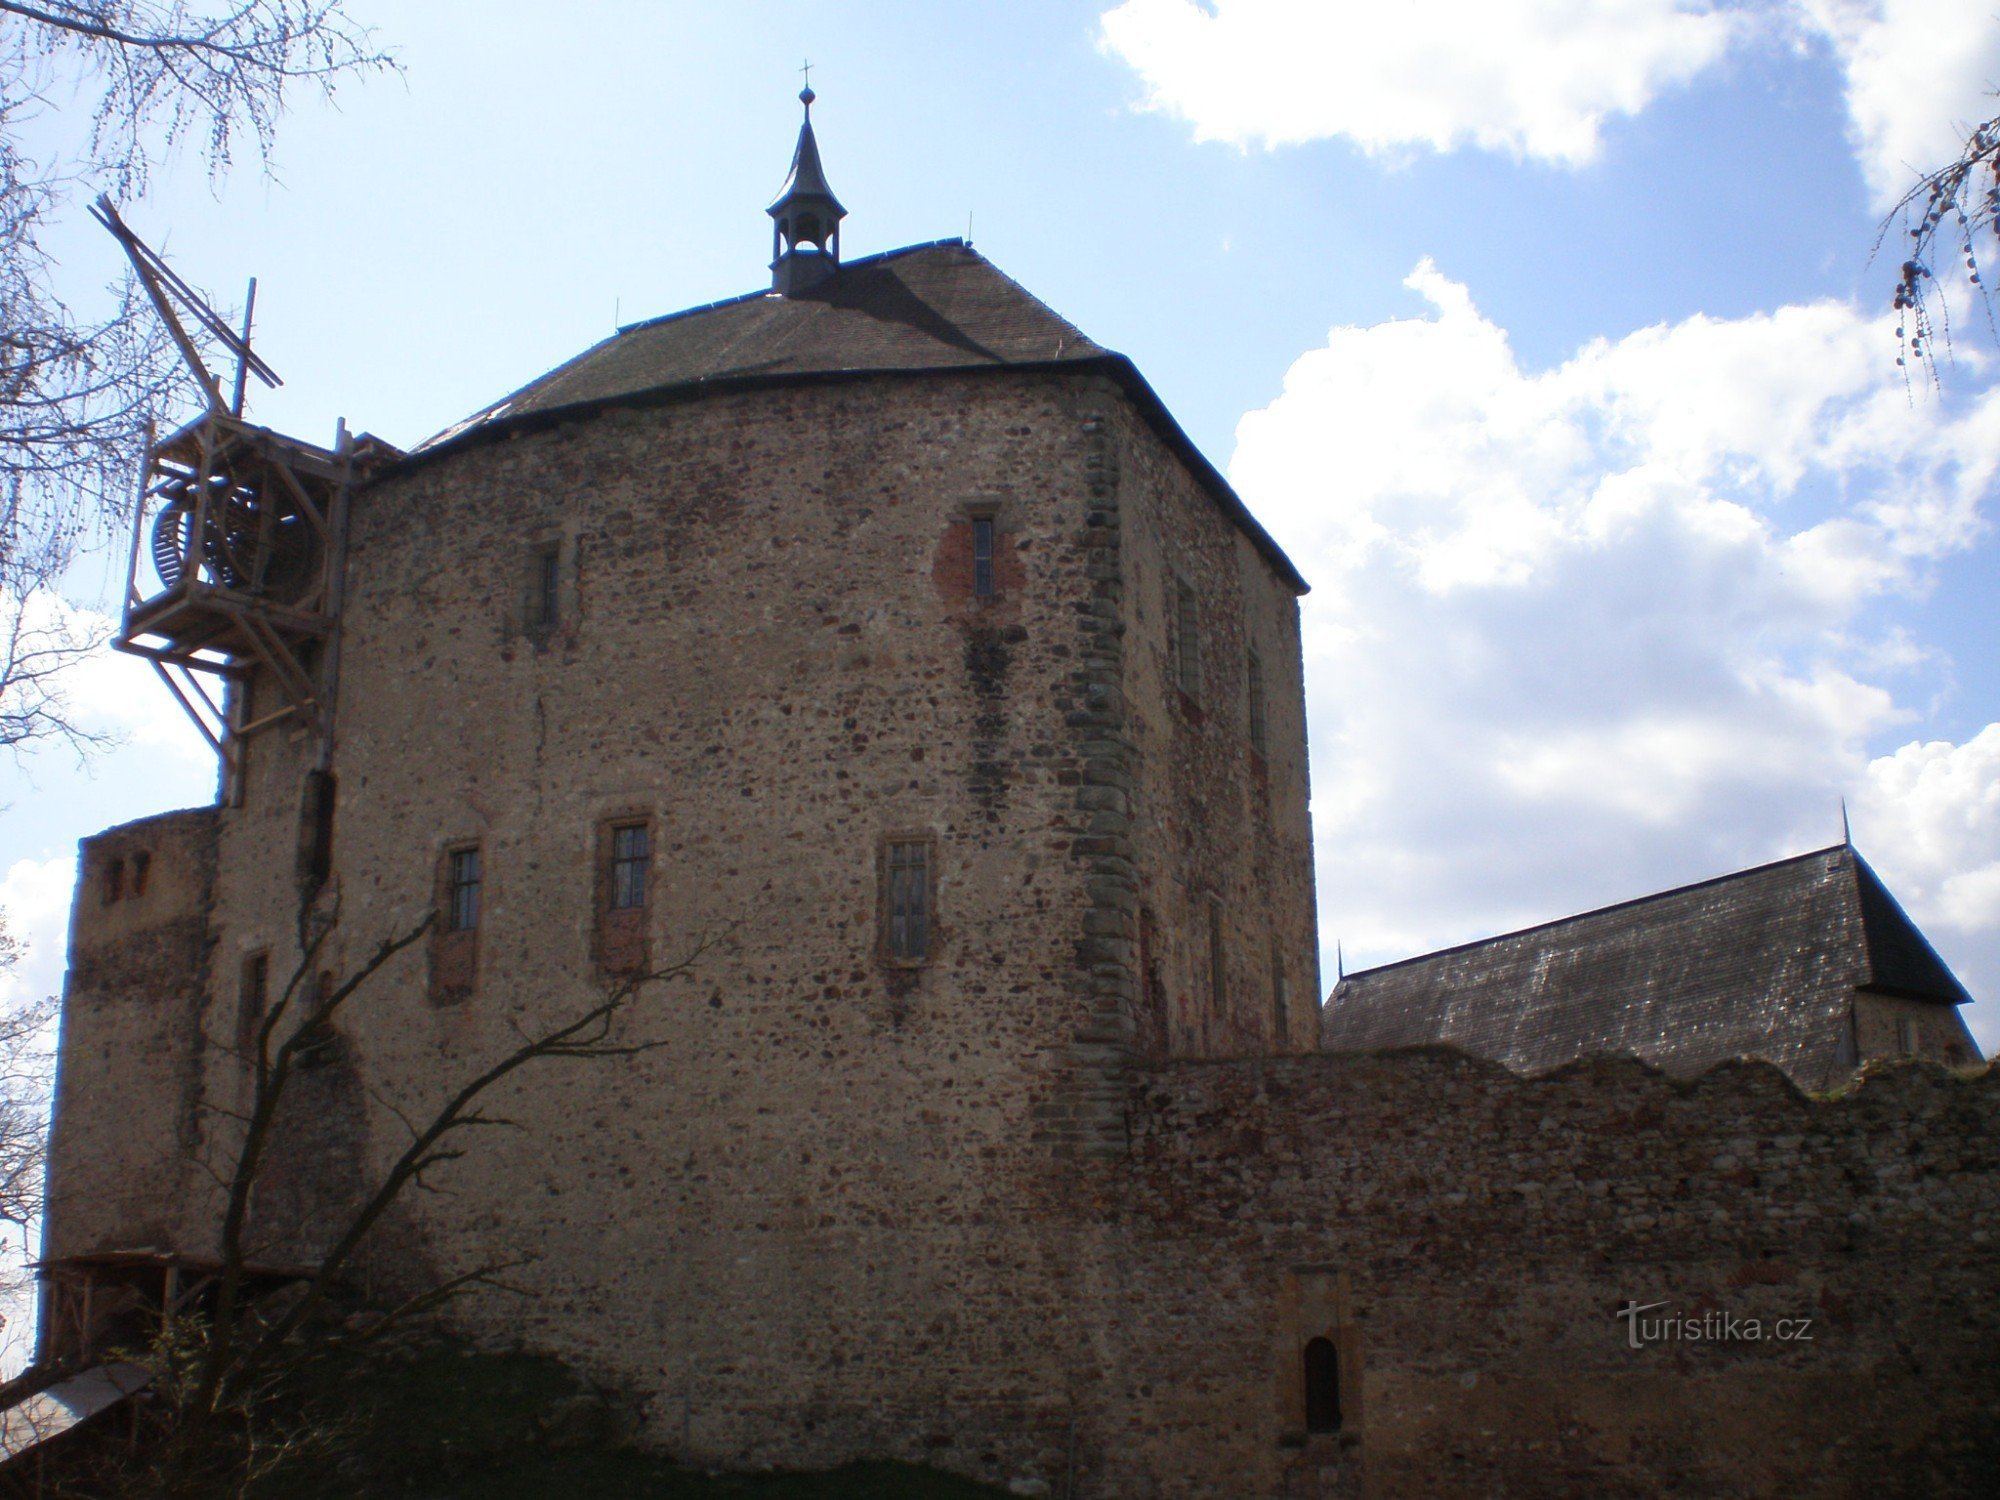 Замок Точник